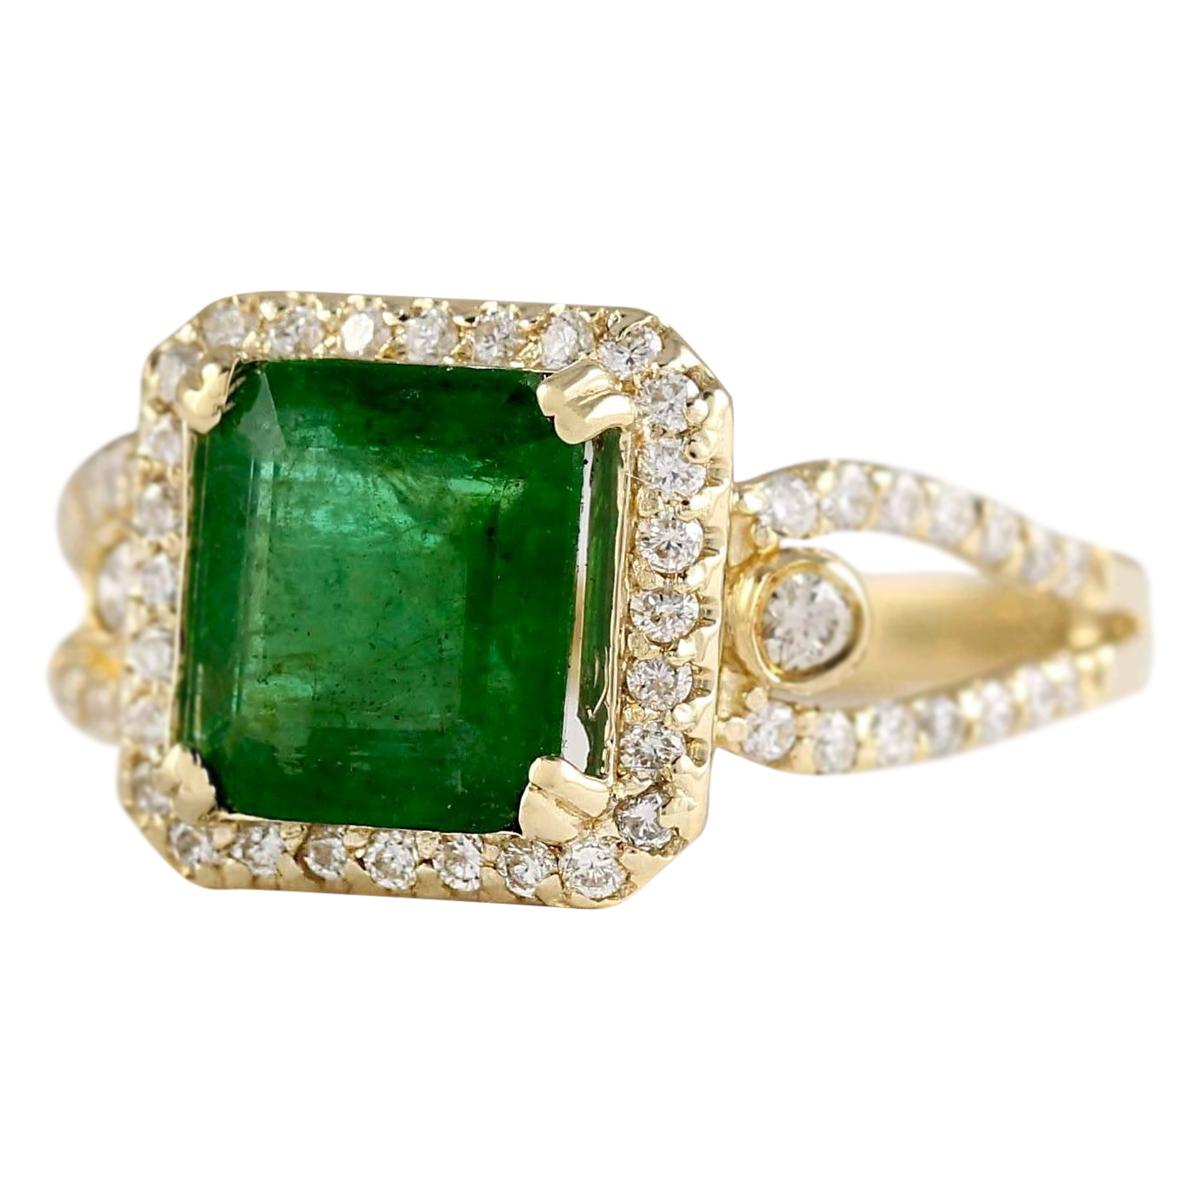 2.90 Carat Natural Emerald 14 Karat Yellow Gold Diamond Ring
Estampillé : Or jaune 184K
Poids total de l'anneau : 5,0 grammes
Le poids total des émeraudes naturelles est de 2,35 carats (dimensions : 8,50 x 8,50 mm).
Couleur : Vert
Le poids total des